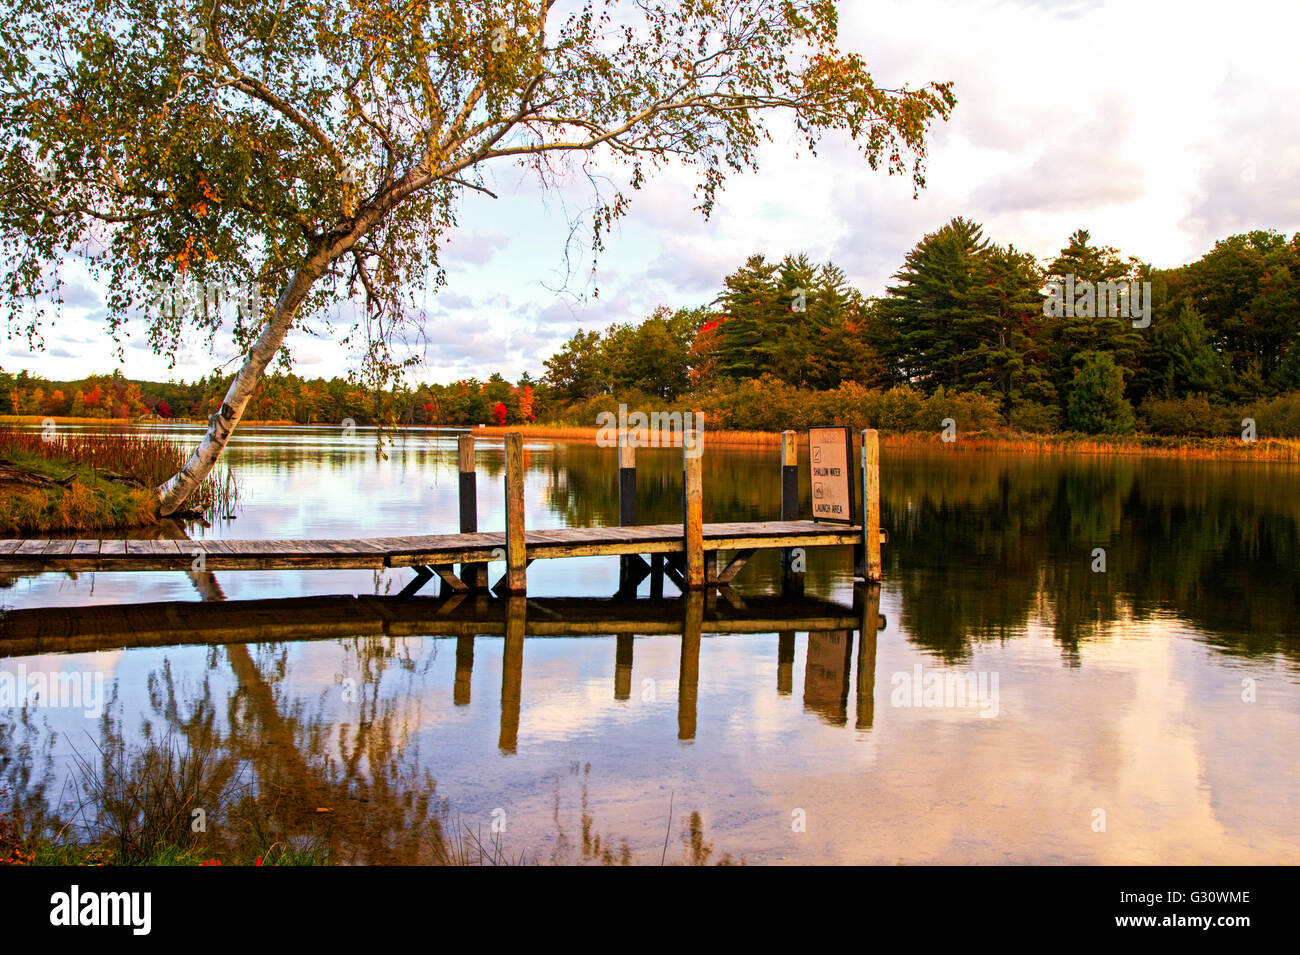 Reflets d'automne. Lac d'eau douce à l'automne feuillage réflexions. Ludington et parc d'État. Ludington, Michigan. Banque D'Images